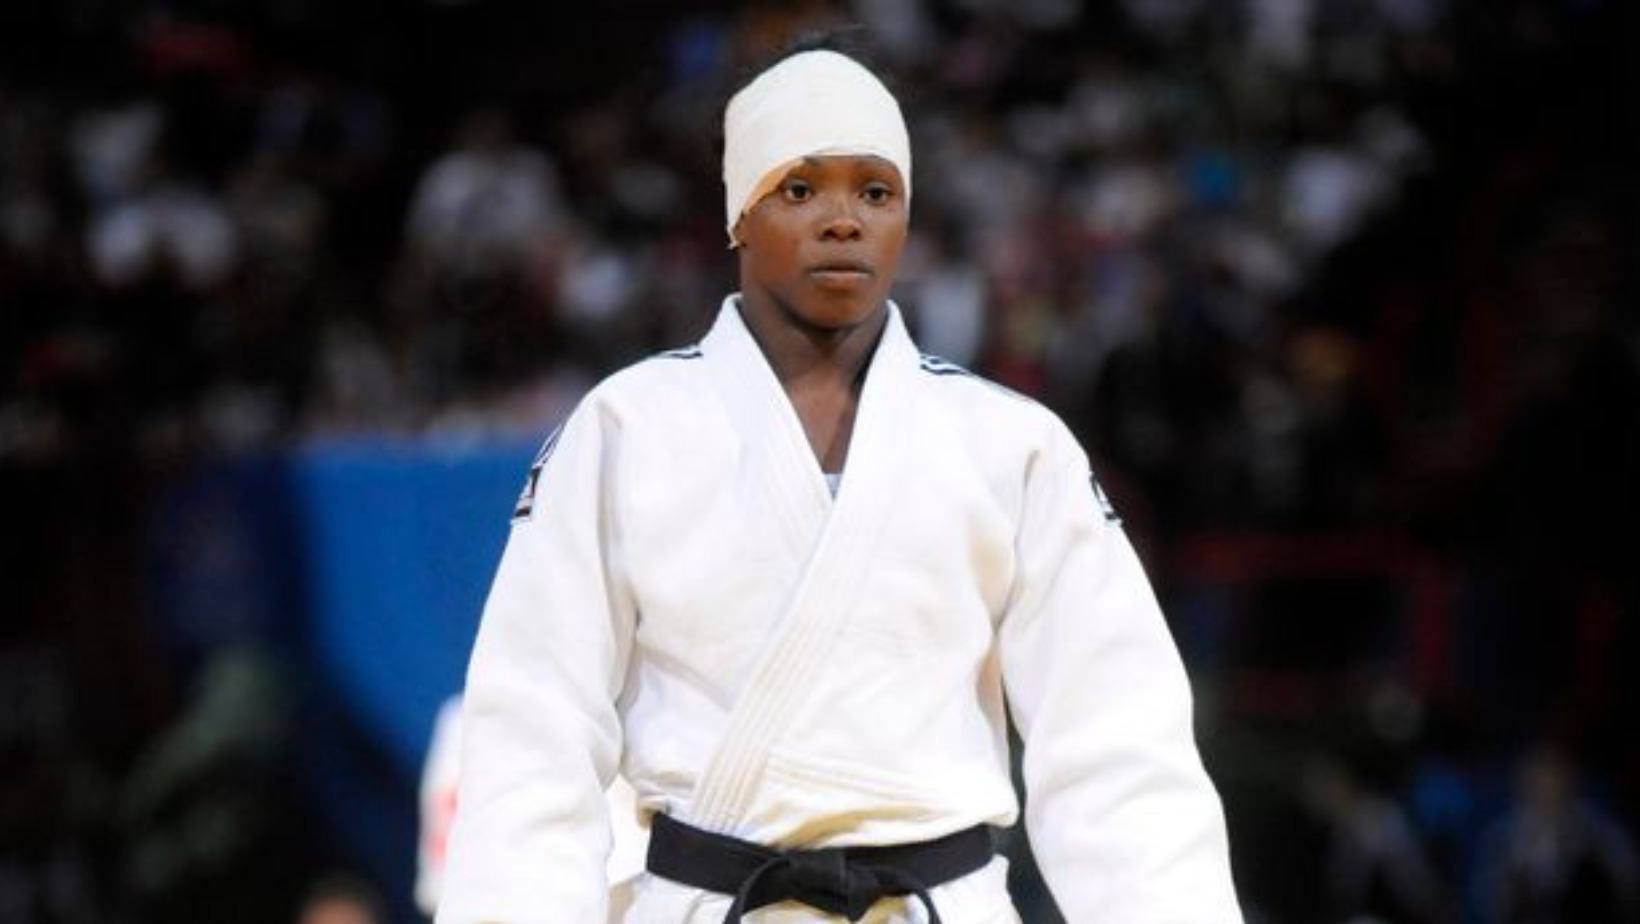 Maricet Espinosa González, fue una deportista cubana que compitió en judo. Foto: Fuente externa